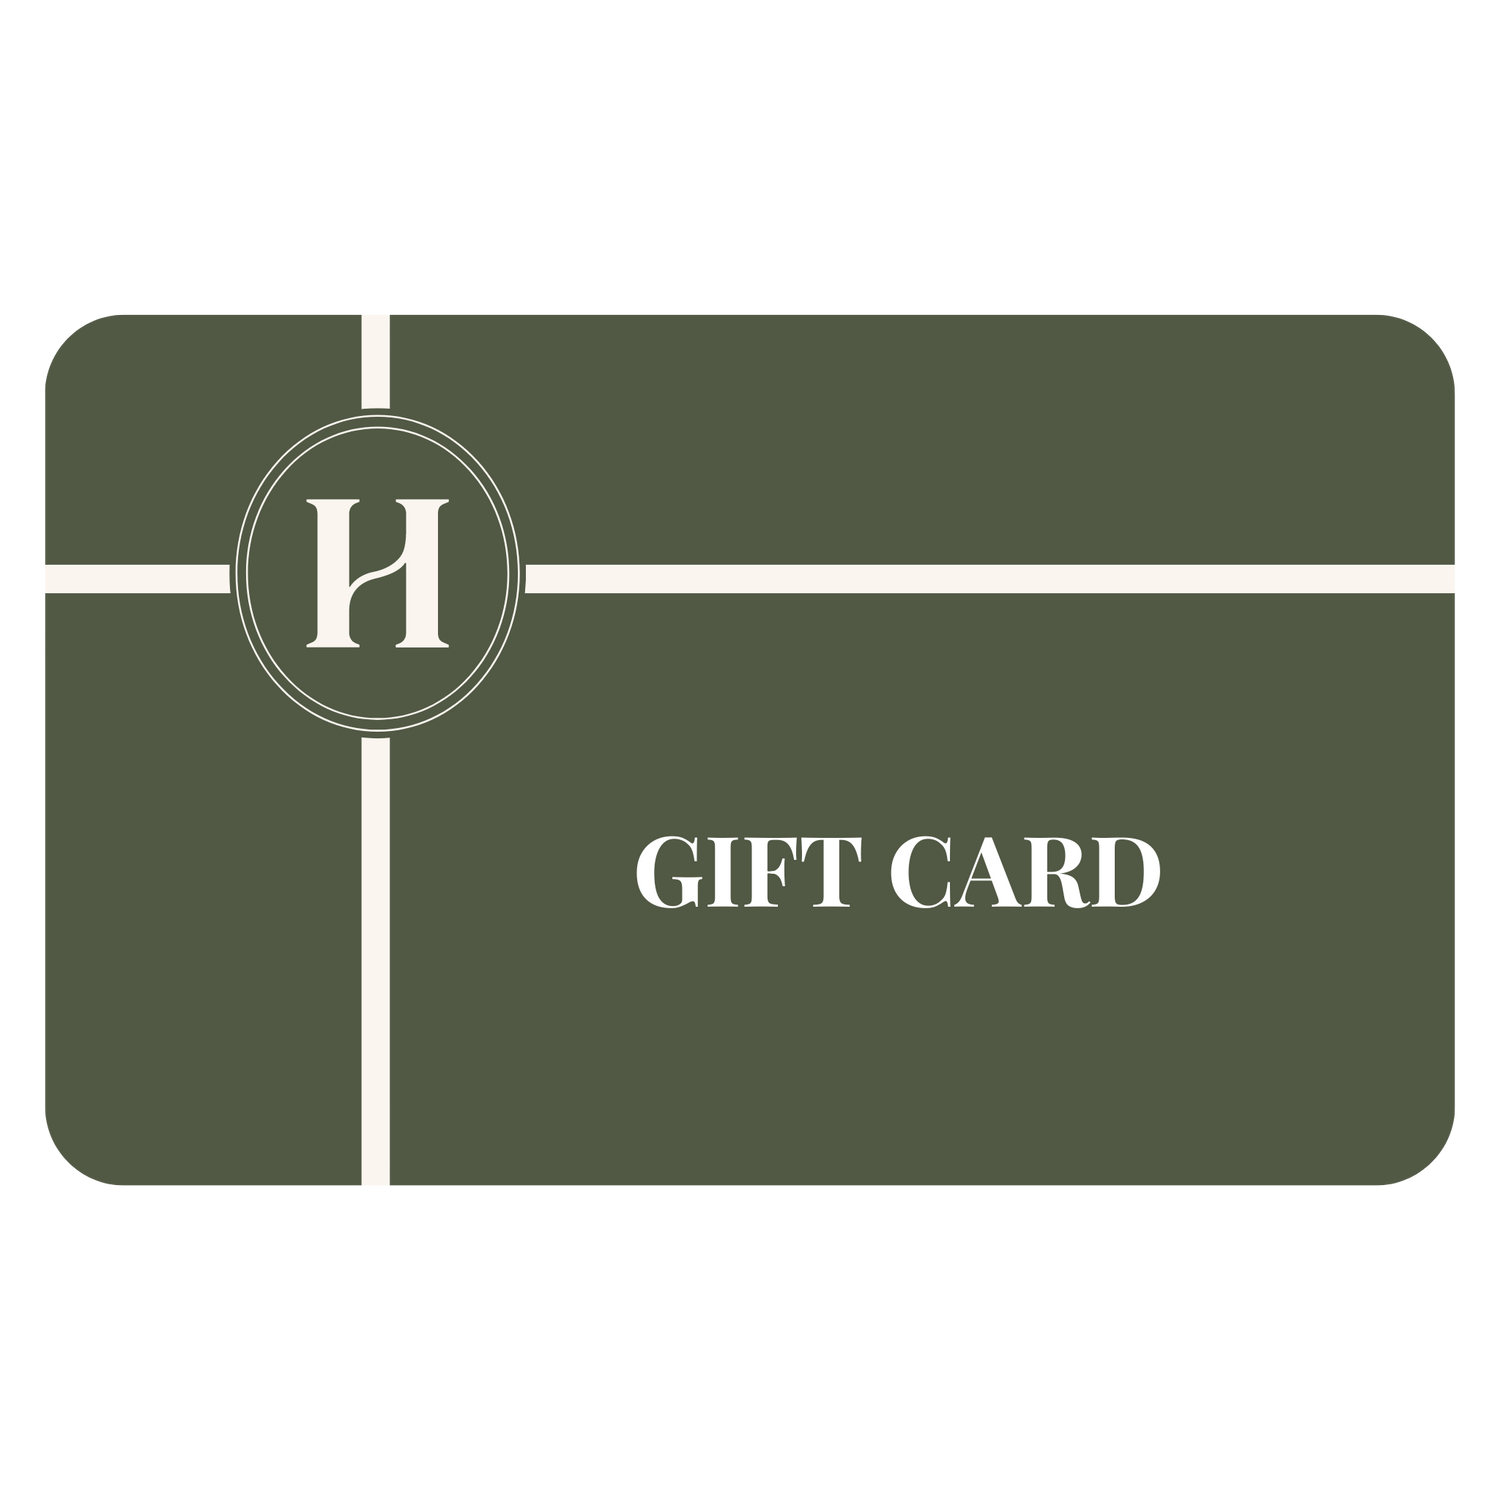 Herriet - tarjeta regalo para comprar en Herriet, accesorios para el hogar, pijamas, fundas de almohada, velas...